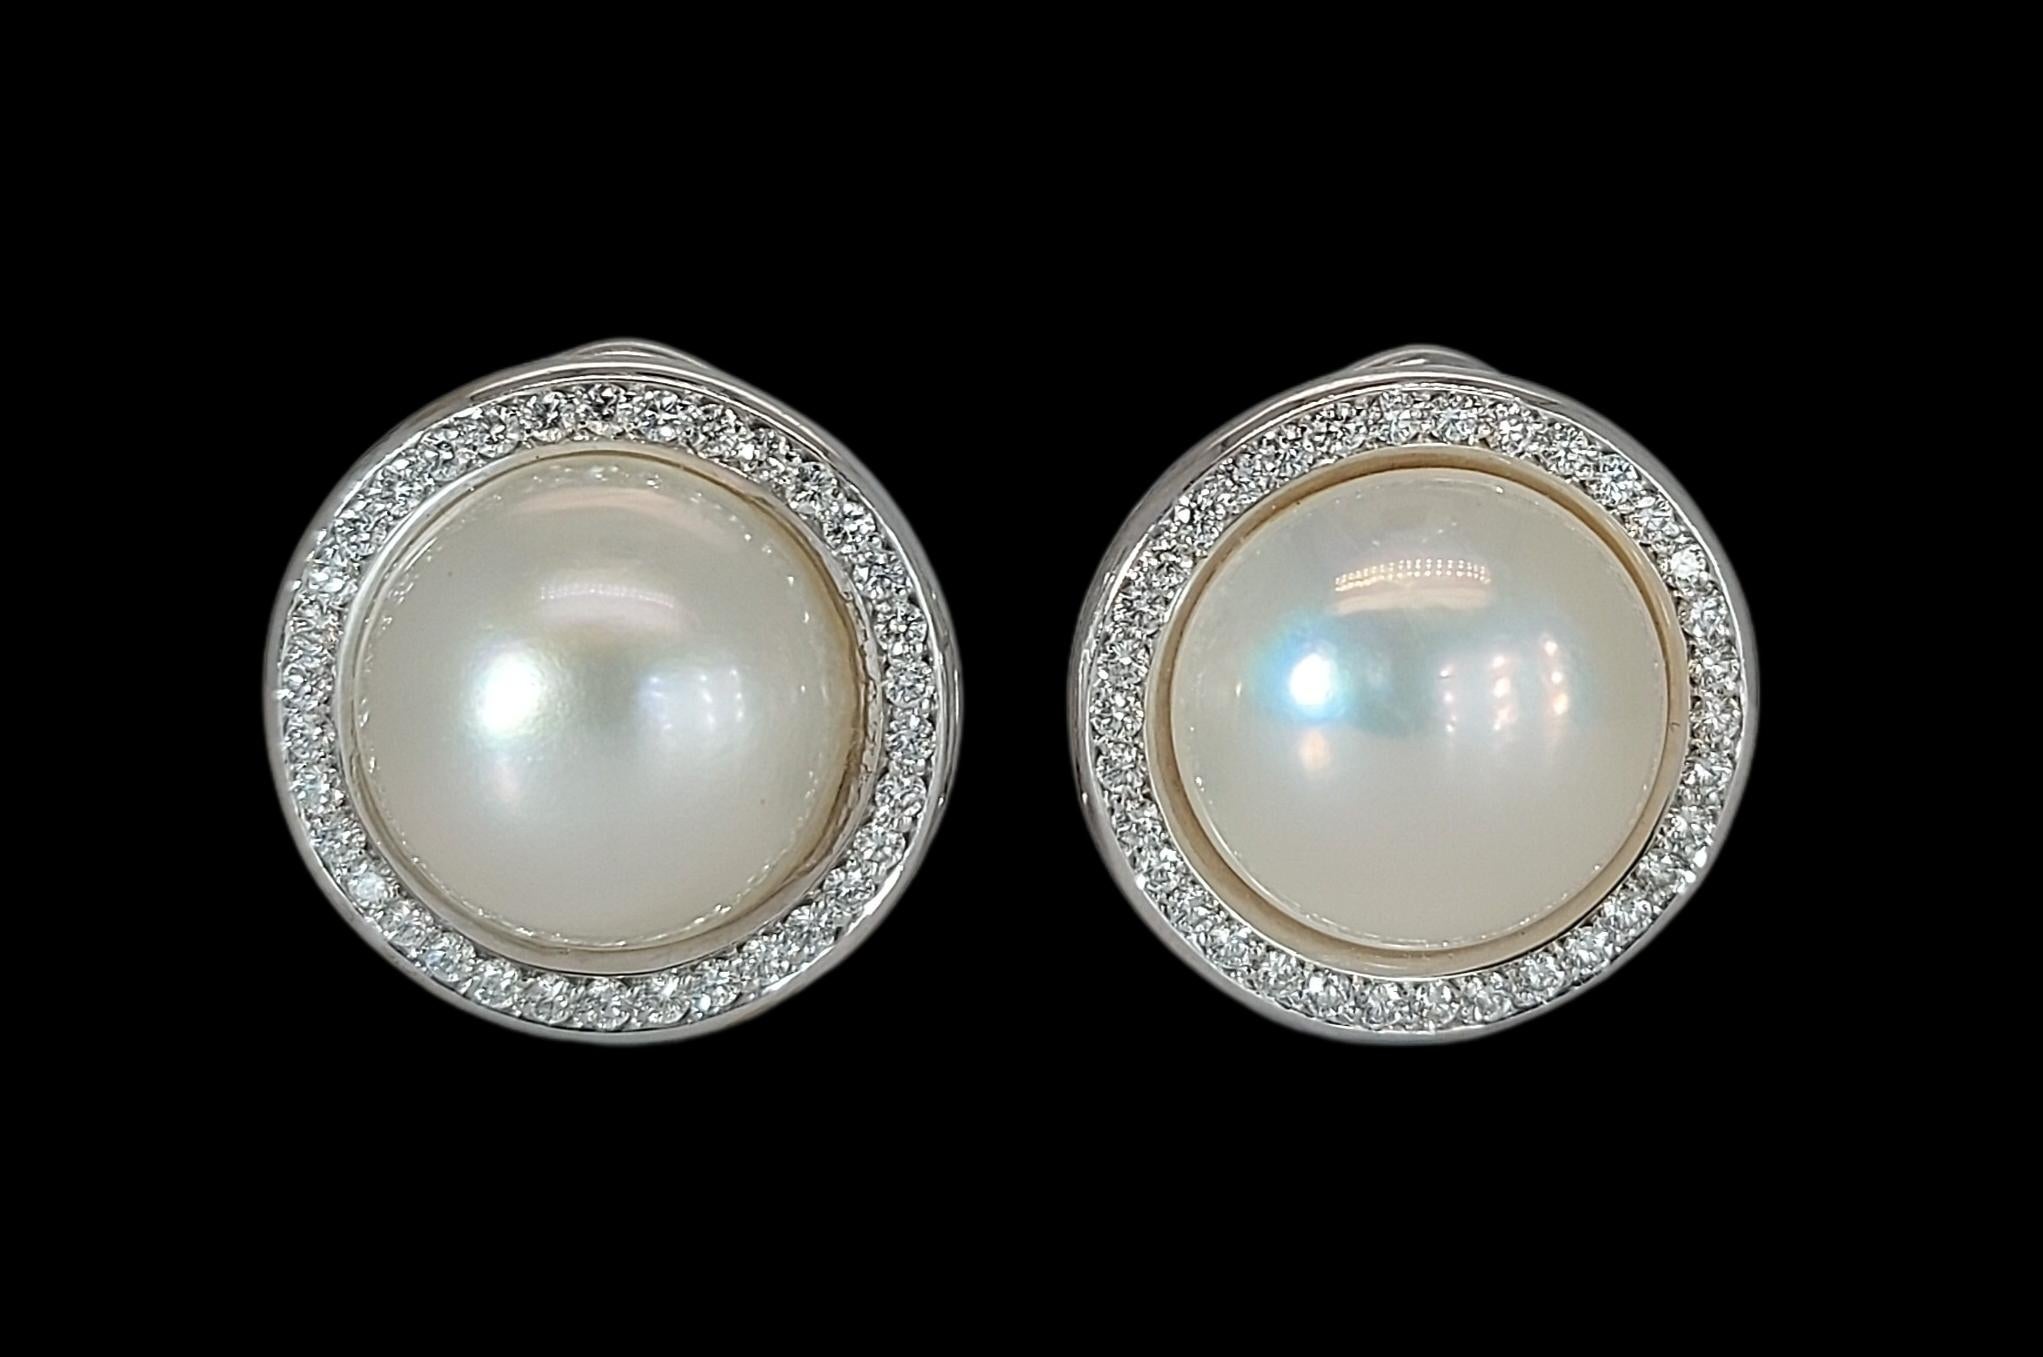 Superbes boucles d'oreilles à clip en perles de Mabe rondes entourées de diamants en 18 carats

Diamants : 64 diamants taille brillant 

Perle : Perle Mabe avec un diamètre de 13mm 

Matériau : or blanc 18kt

Mesures : Diamètre 18,3 mm x 21